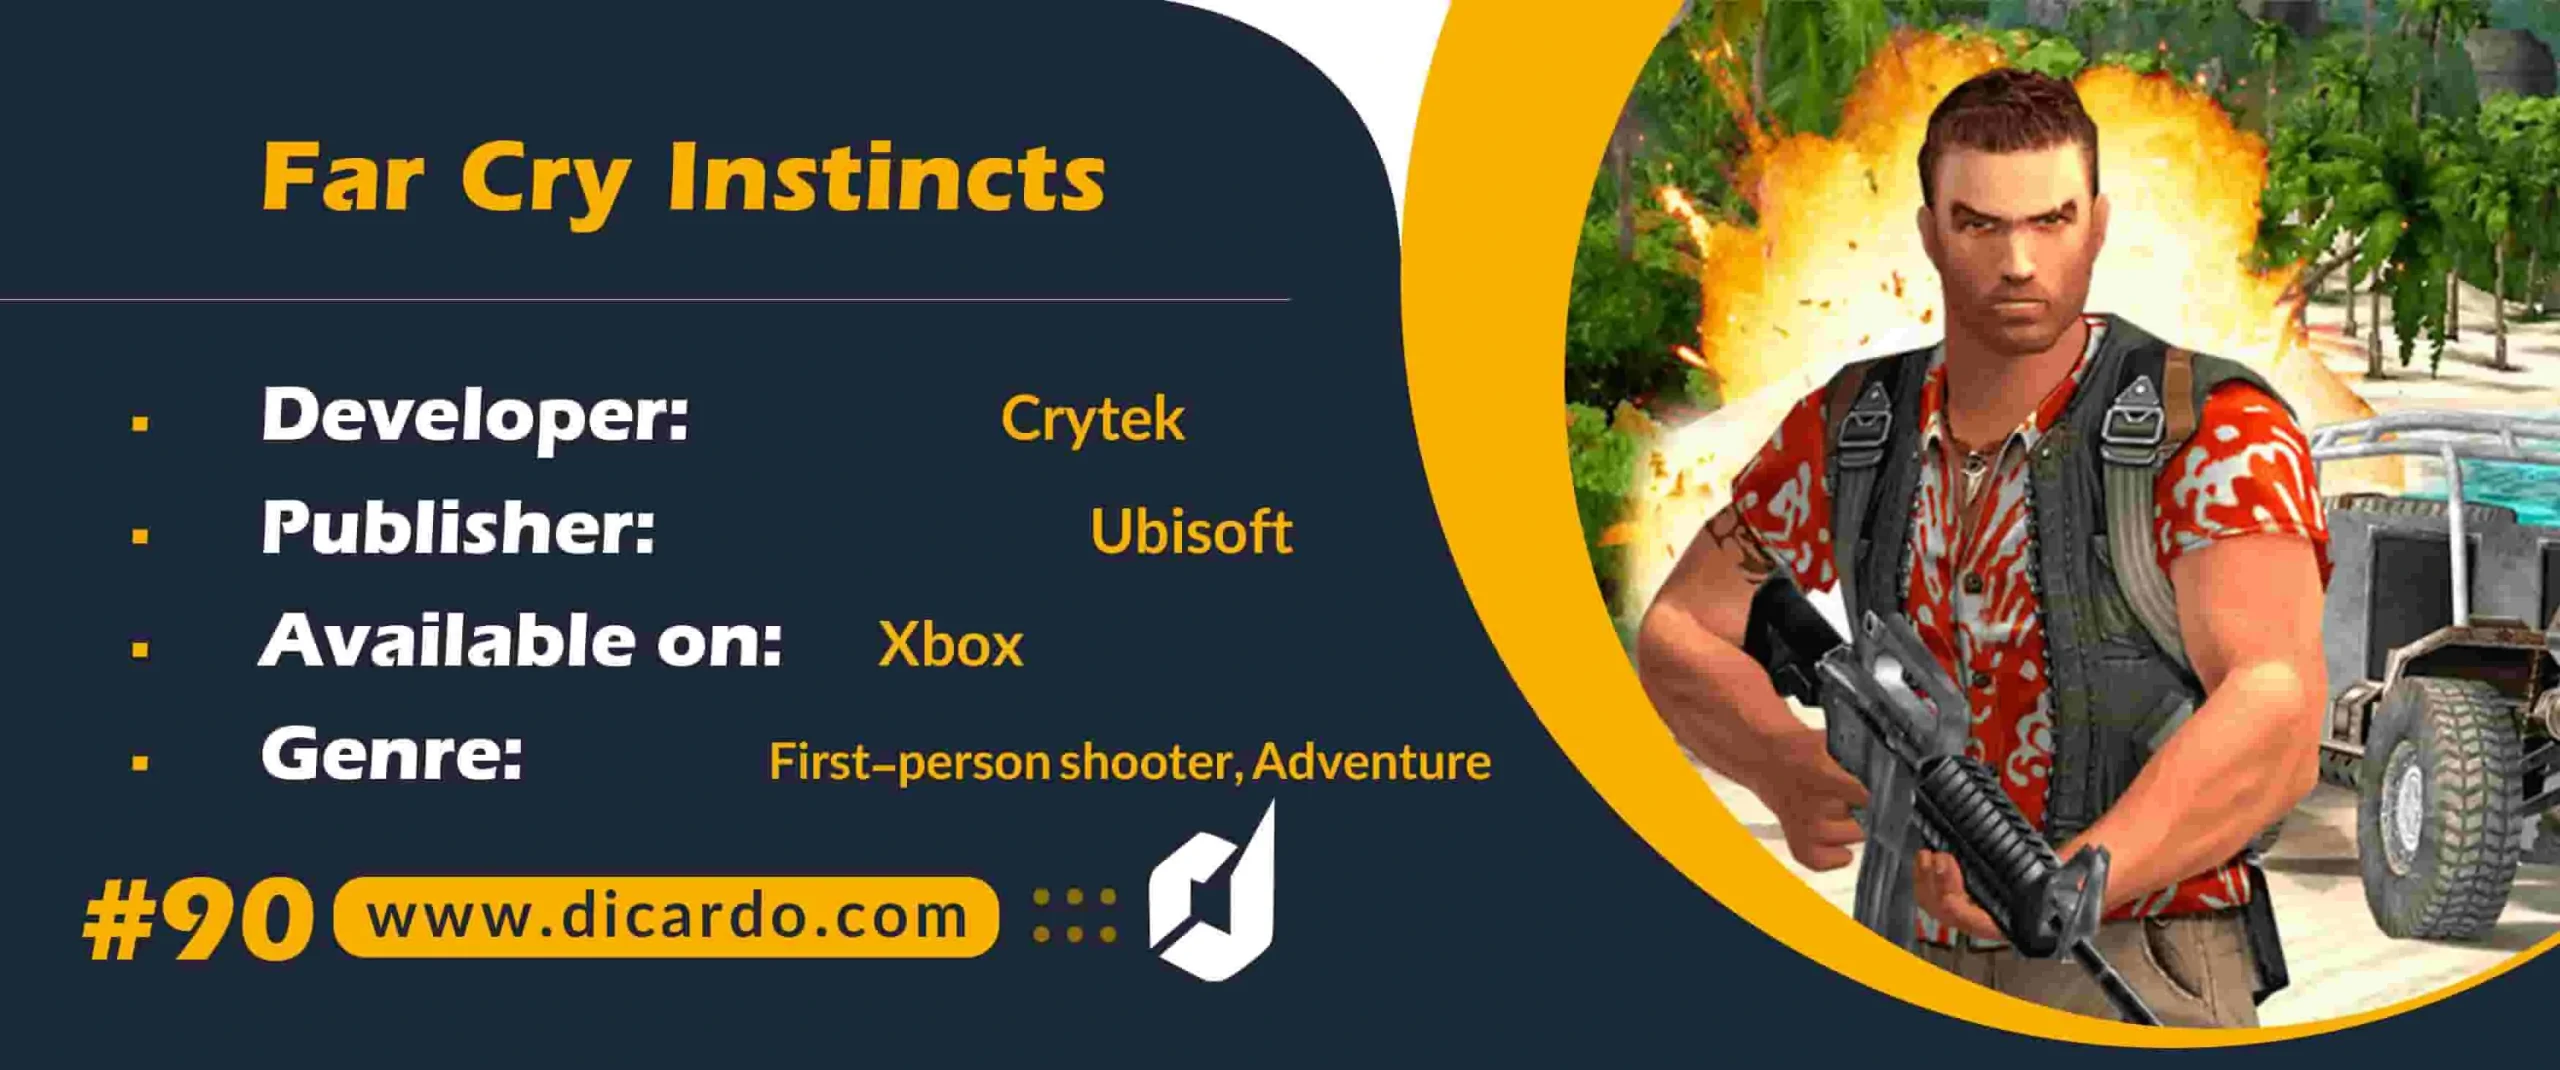 #90 فار کرای اینستینکس Far Cry Instincts از بهترین بازیهای ایکس باکس تیرانداز اول شخص